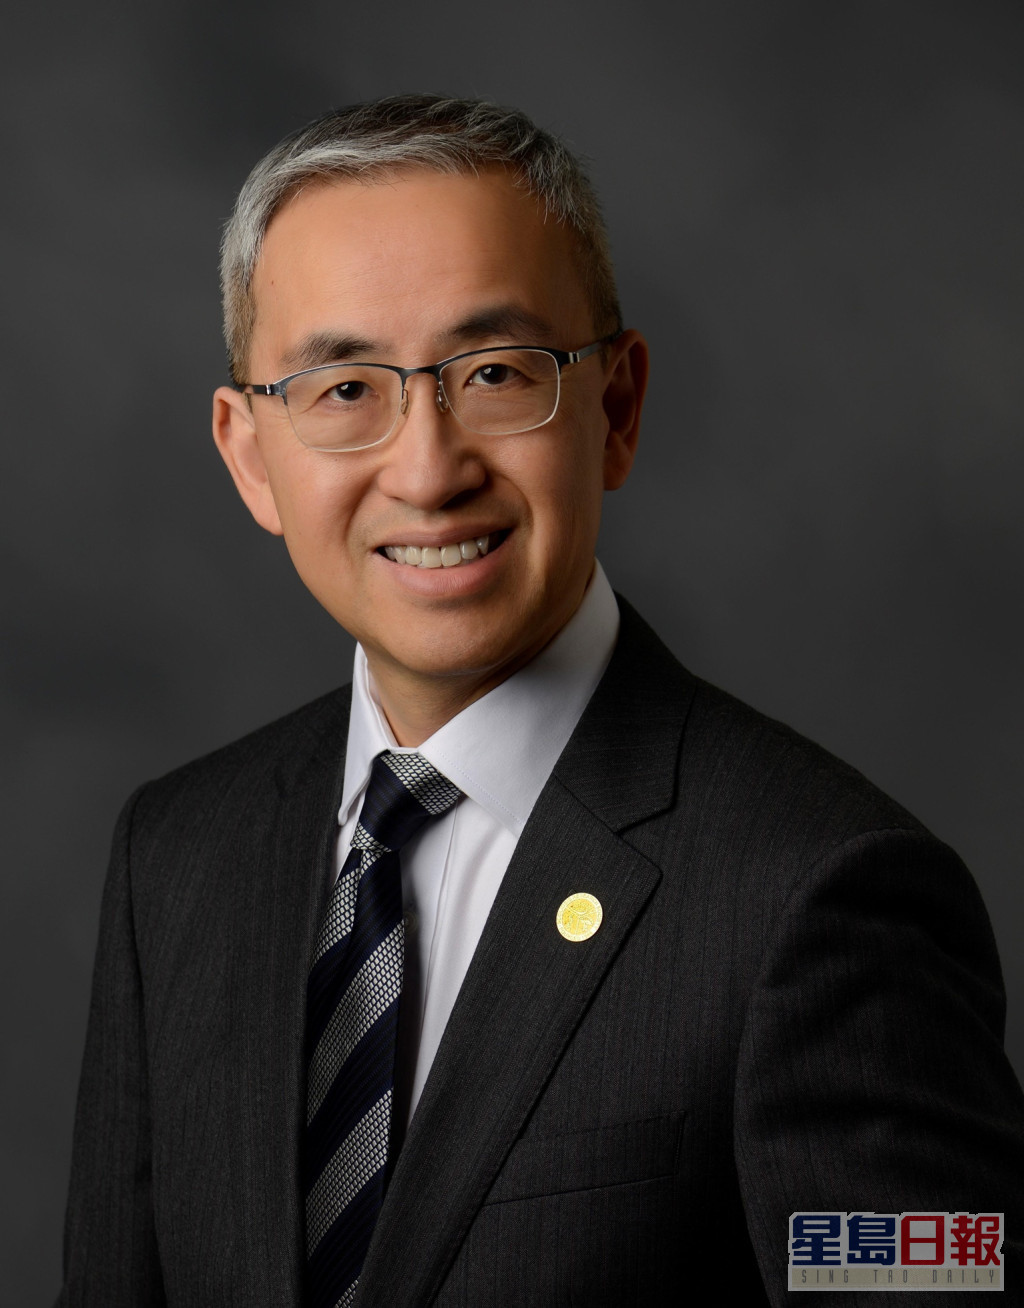 張文智正式就任香港大學深圳醫院新一任院長。港大深圳醫院圖片